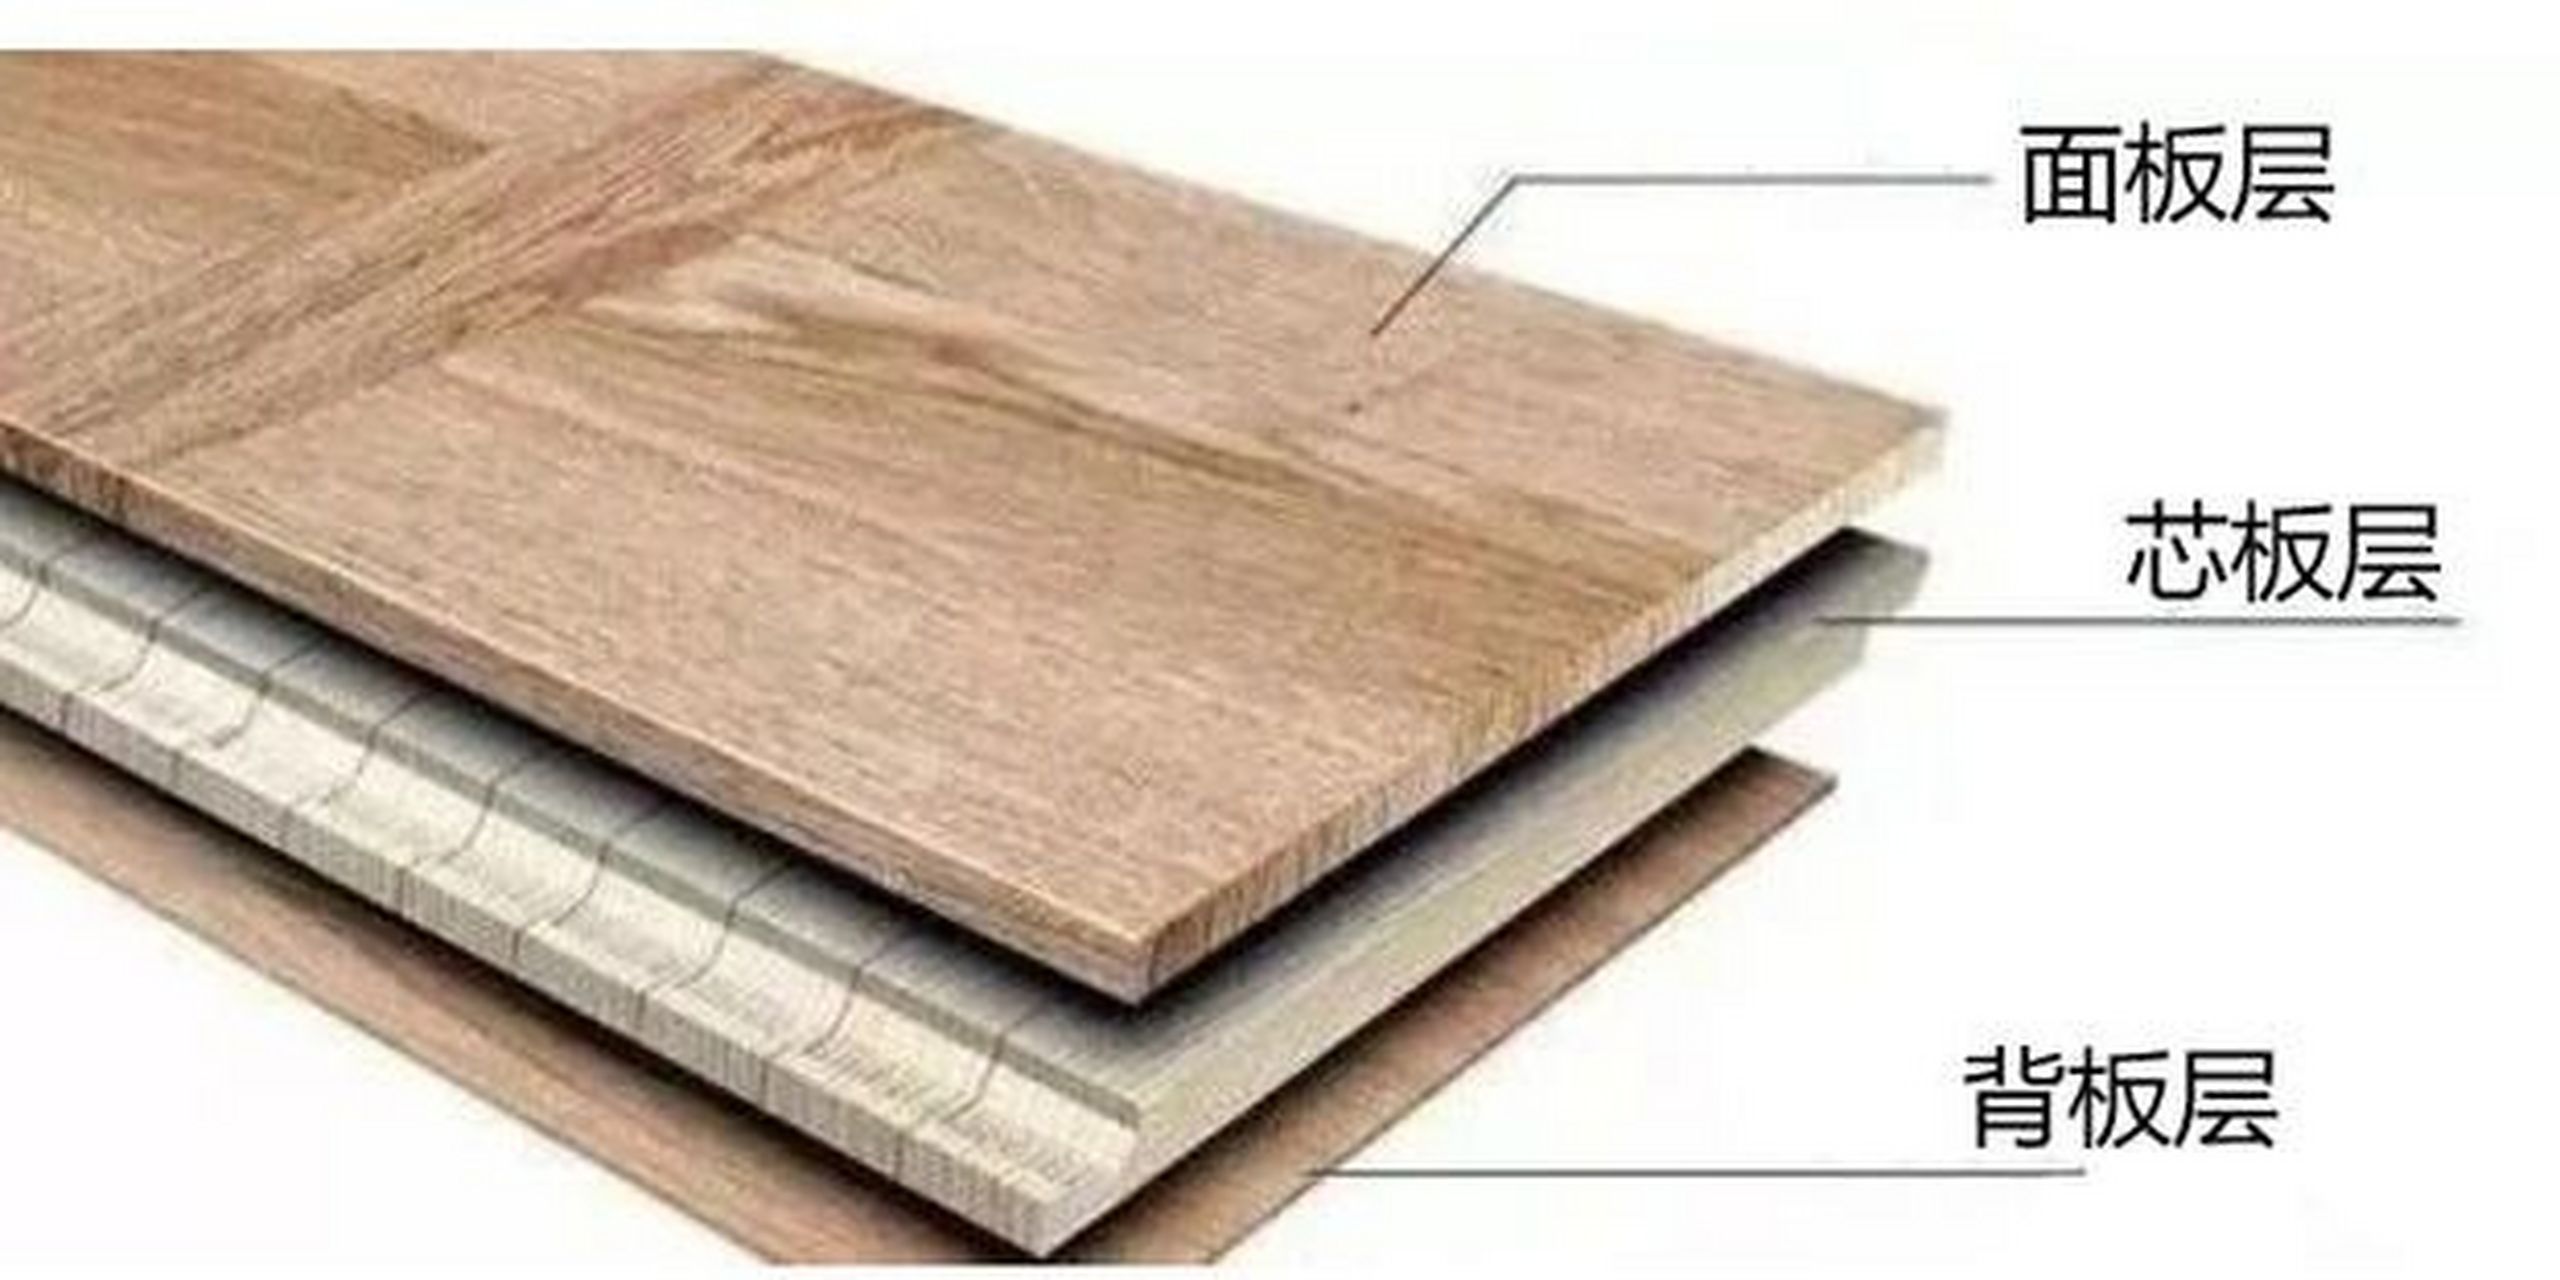 多层实木地板结构图图片